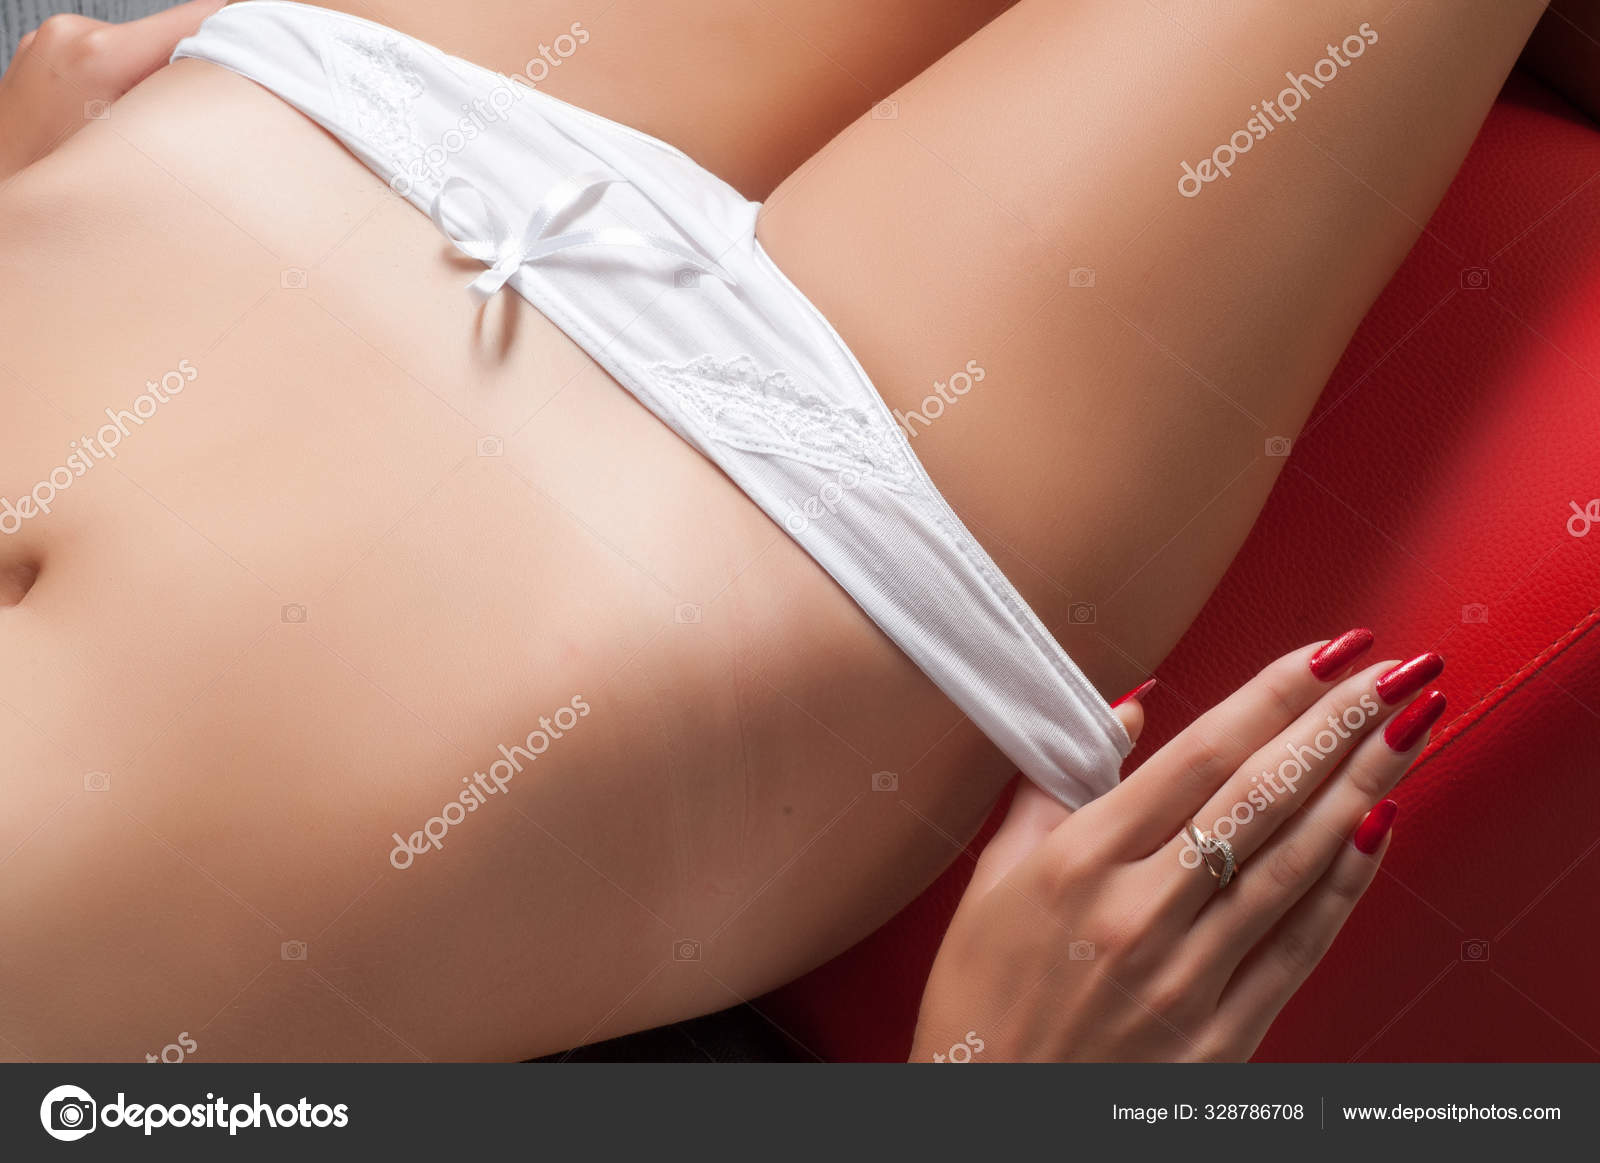 Hot Girl White Panties - White panties Stock Photo by Â©ekina1 328786708